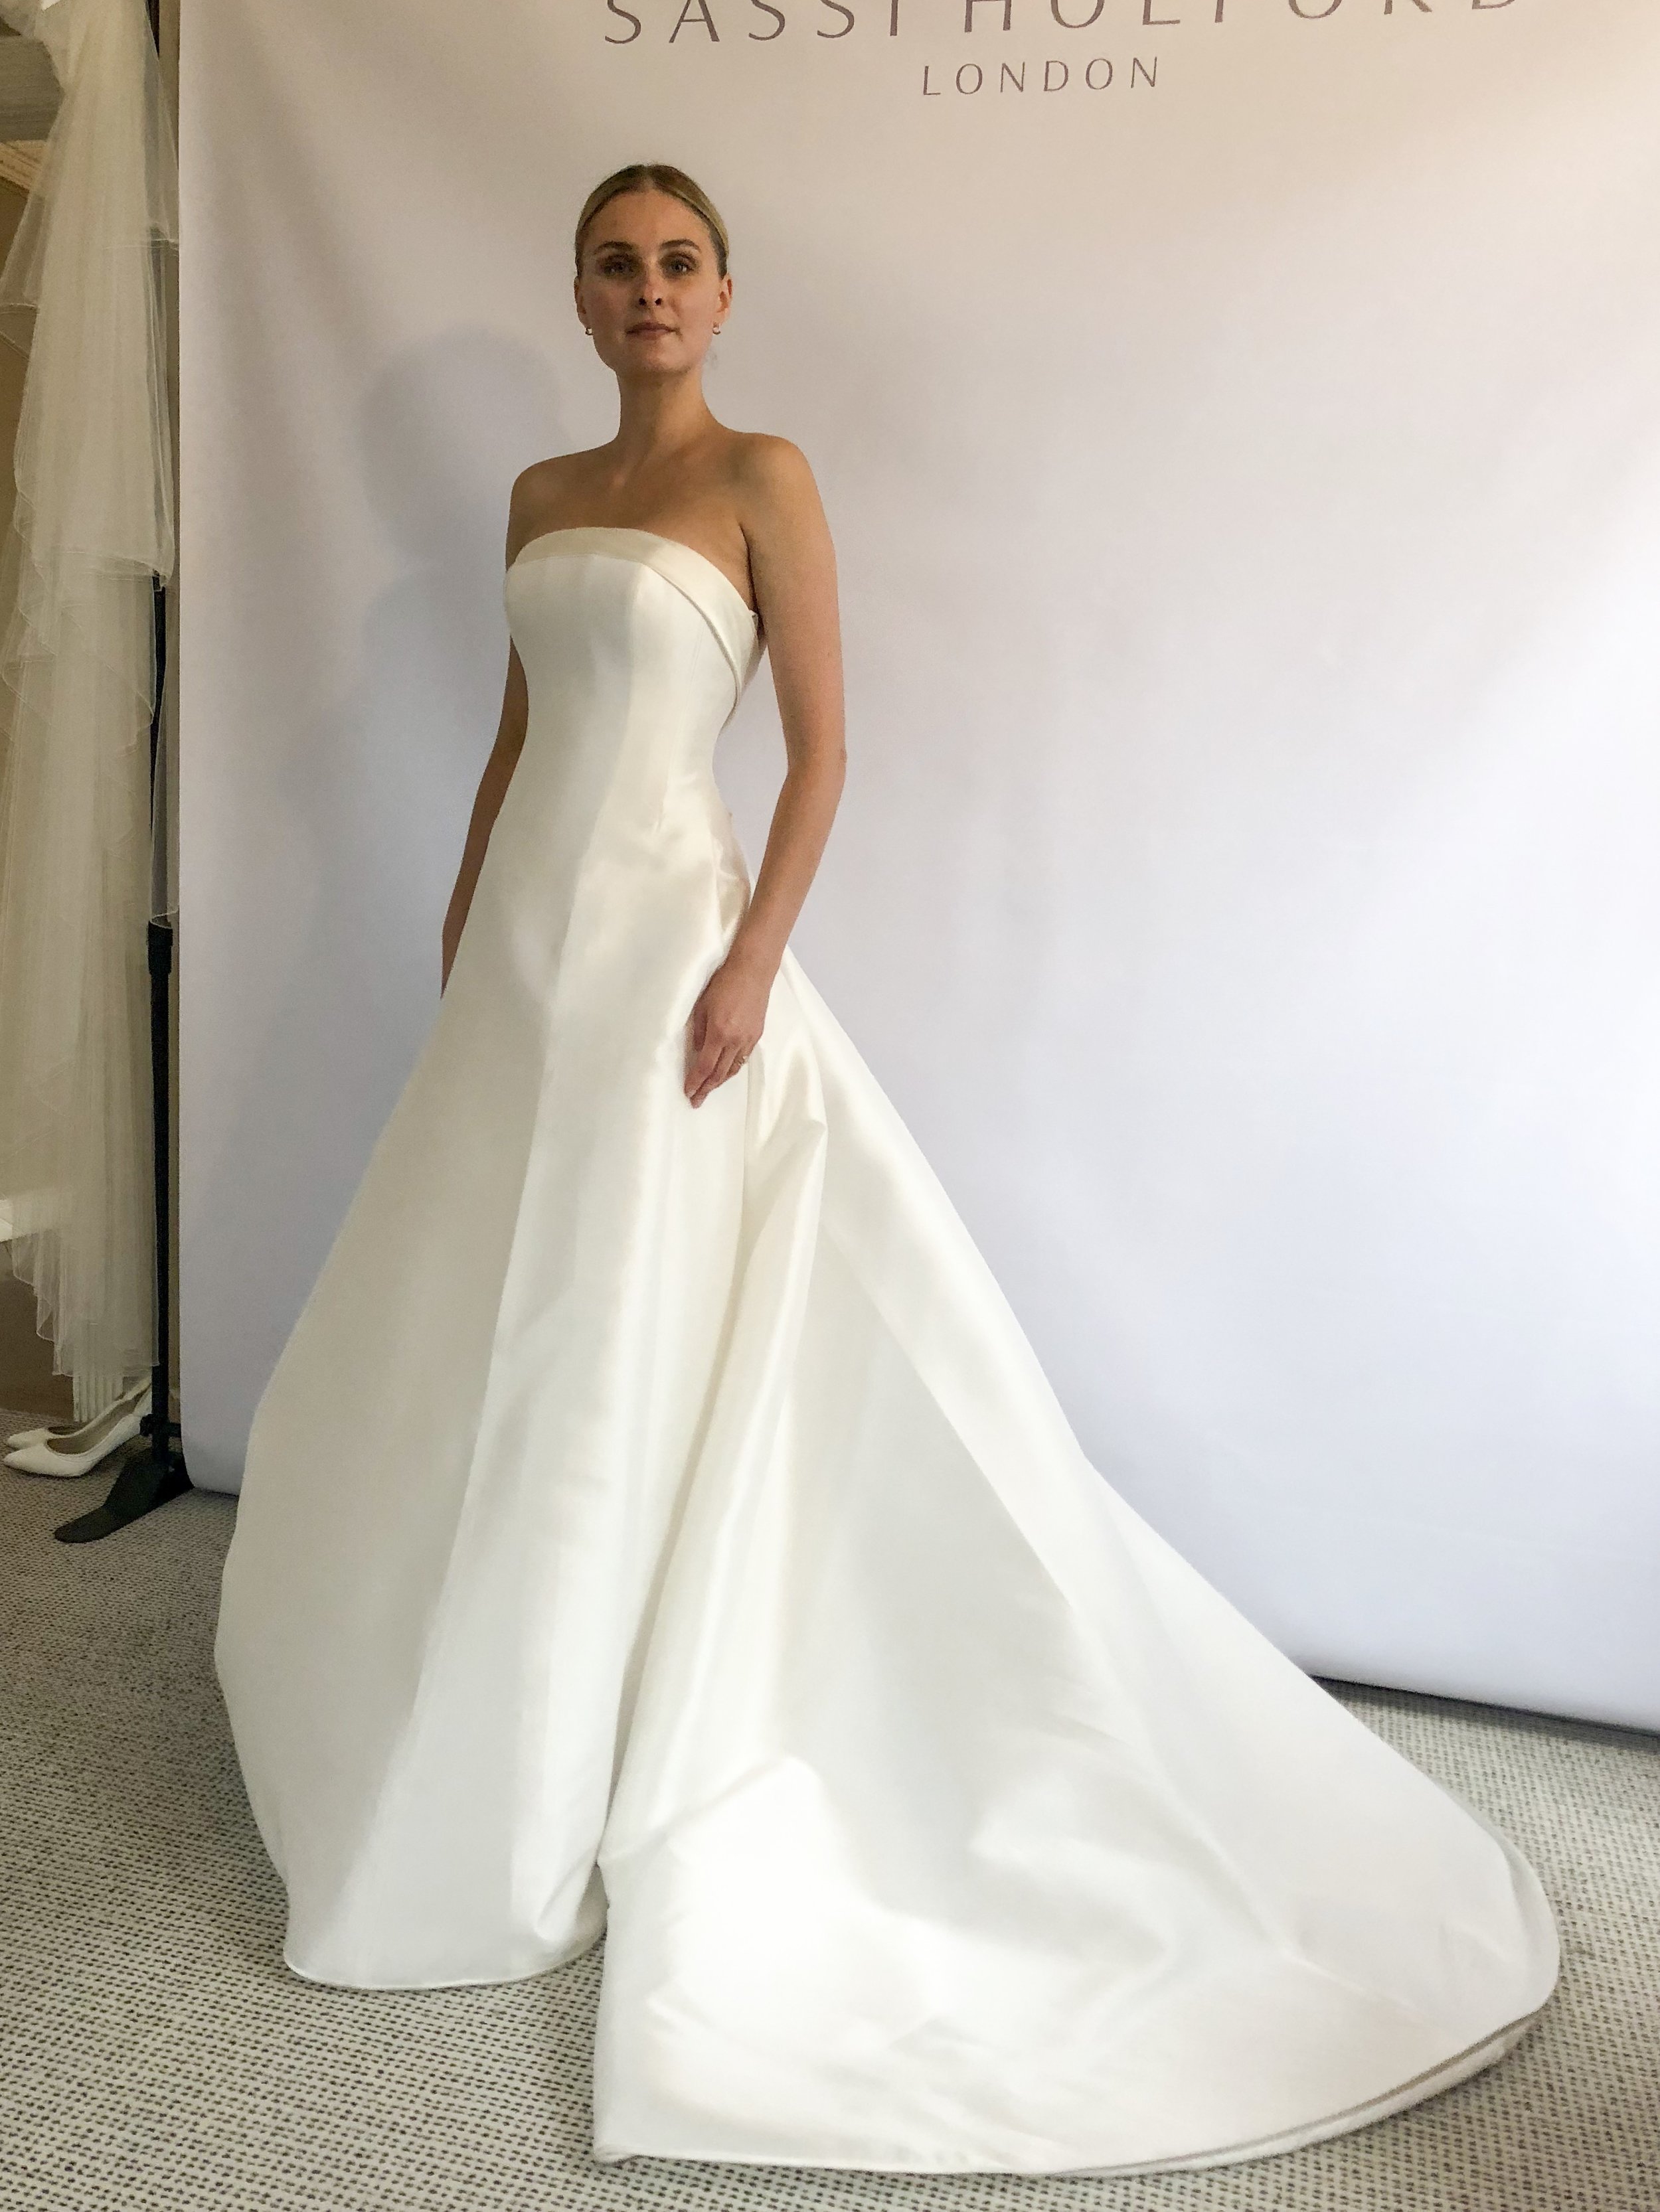 Bridal Fashion Week Trends 2019, New York Bridal Fashion Week, Bridal Market, Soft A Line